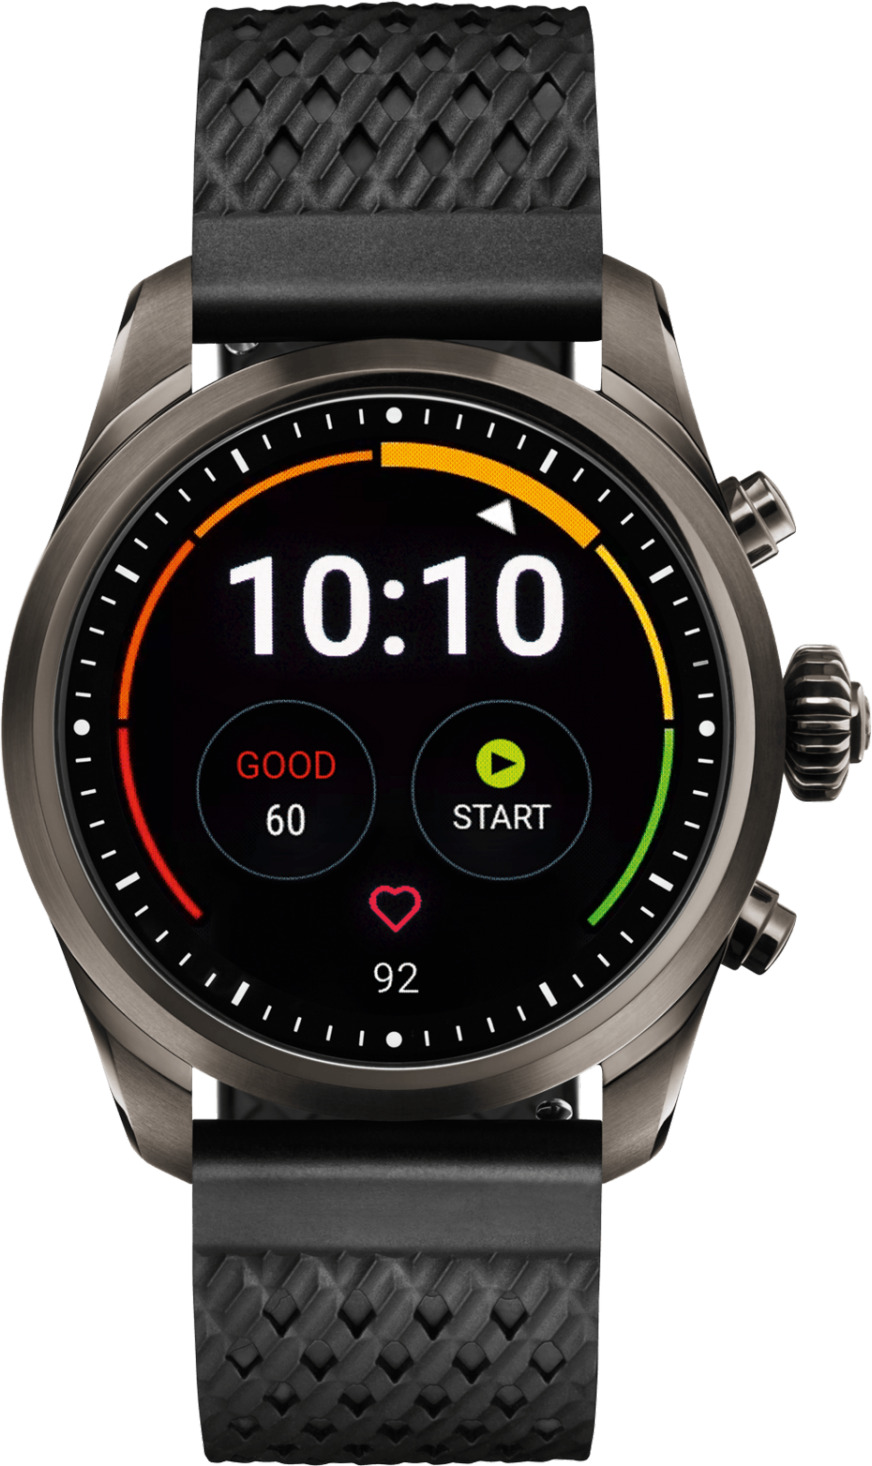 Đồng hồ thông minh - Smart watch Montblanc Summit 2 119441